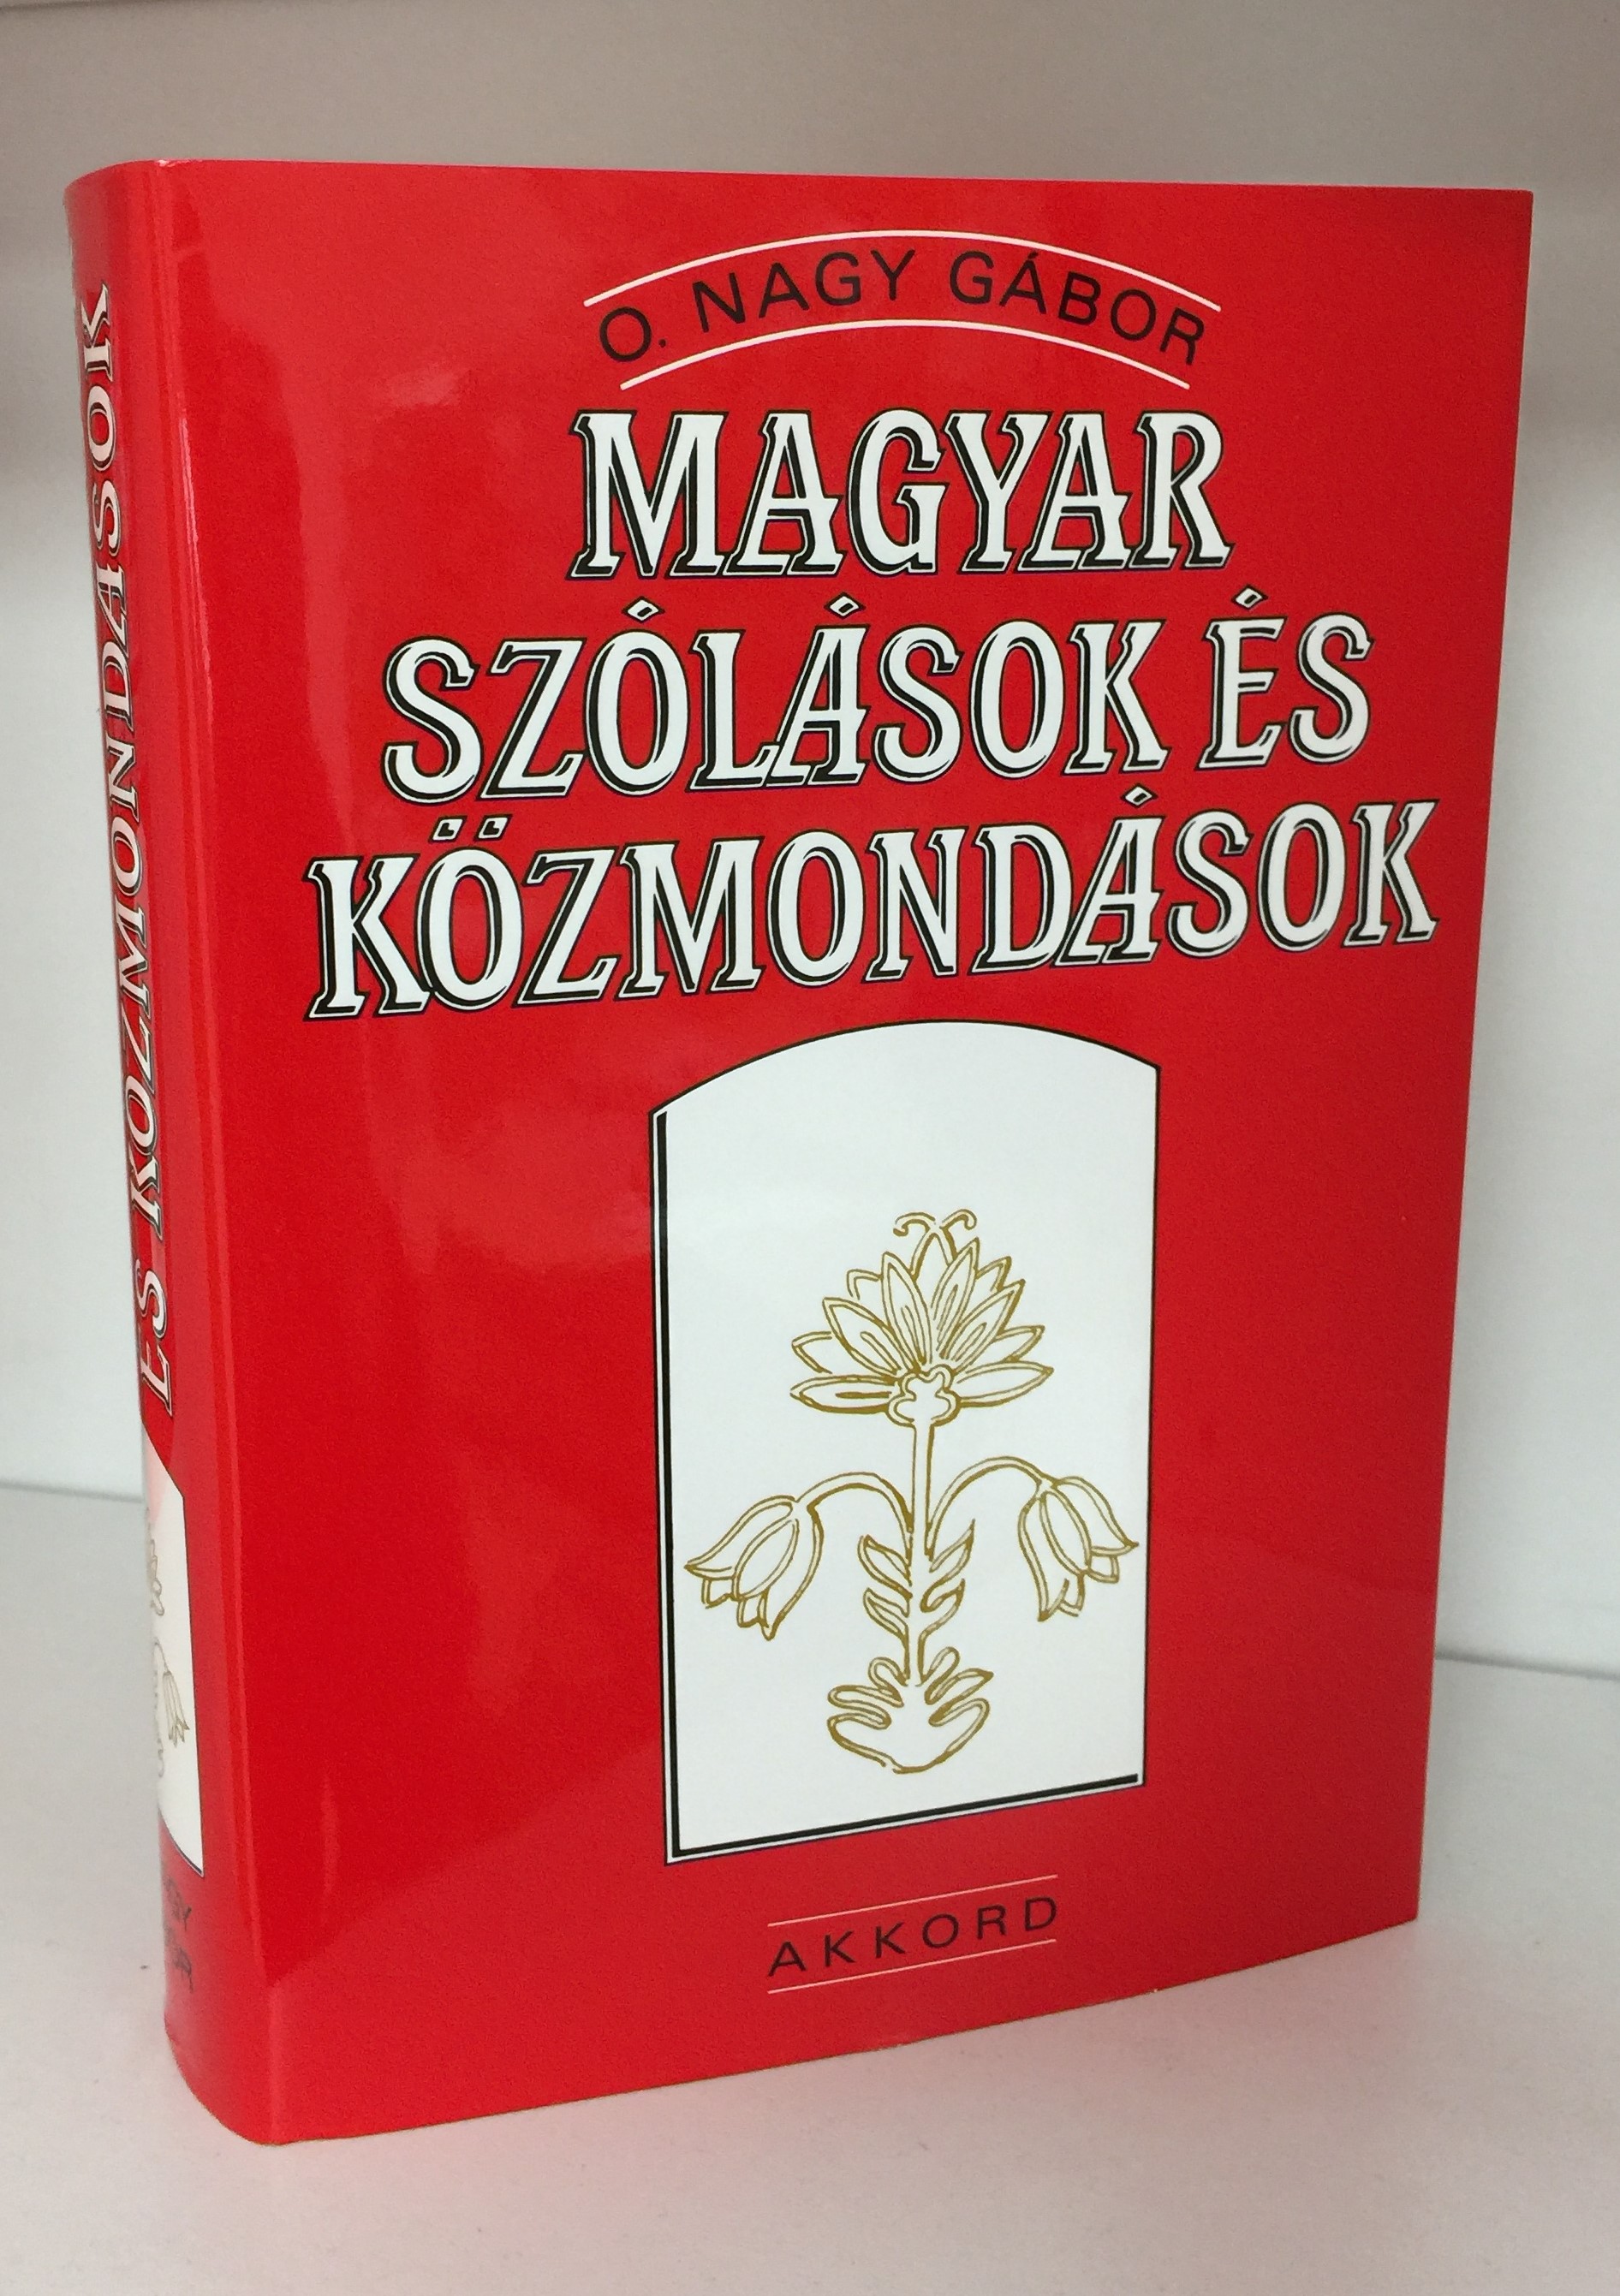 Magyar Szólások és Közmondások by O. Nagy Gábor  1